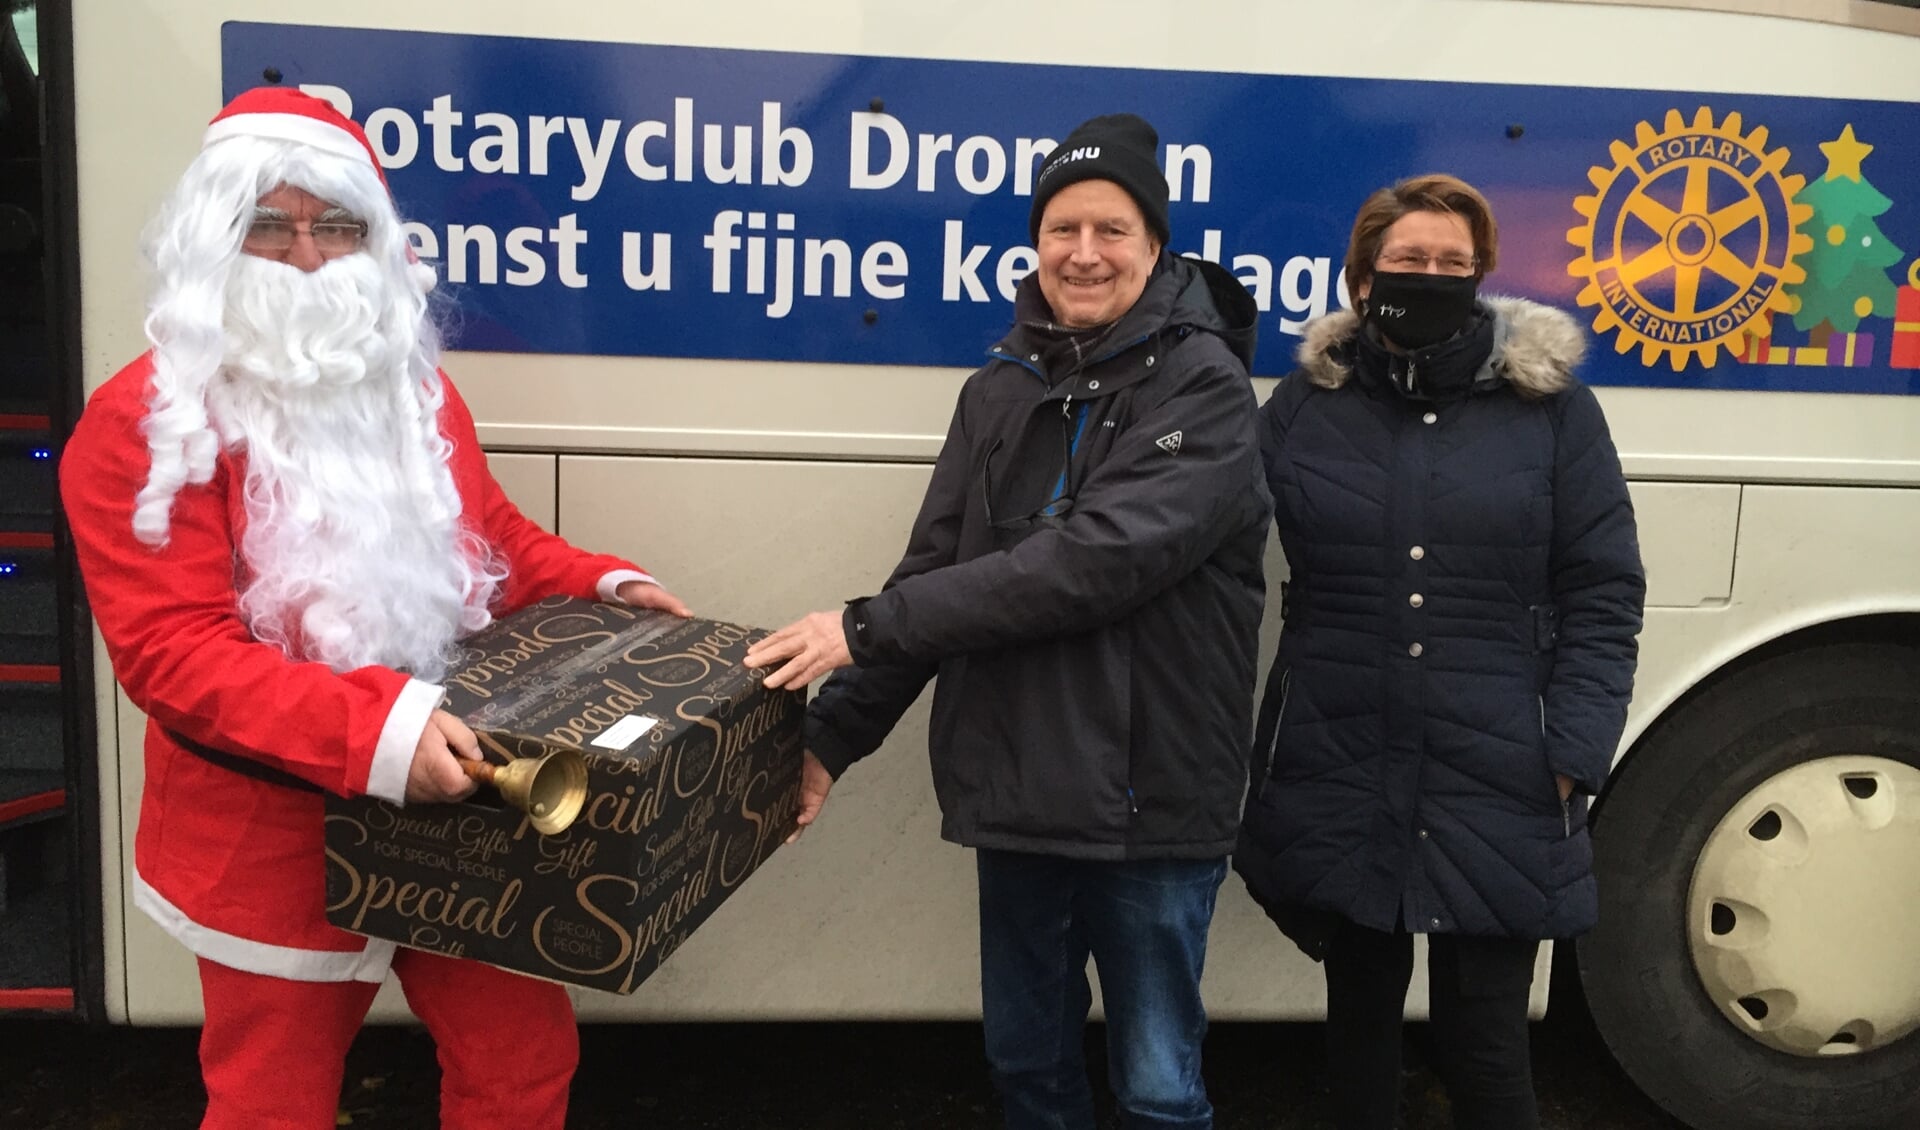 De kerstman overhandigt een kerstpakket namens Rotaryclub Dronten.